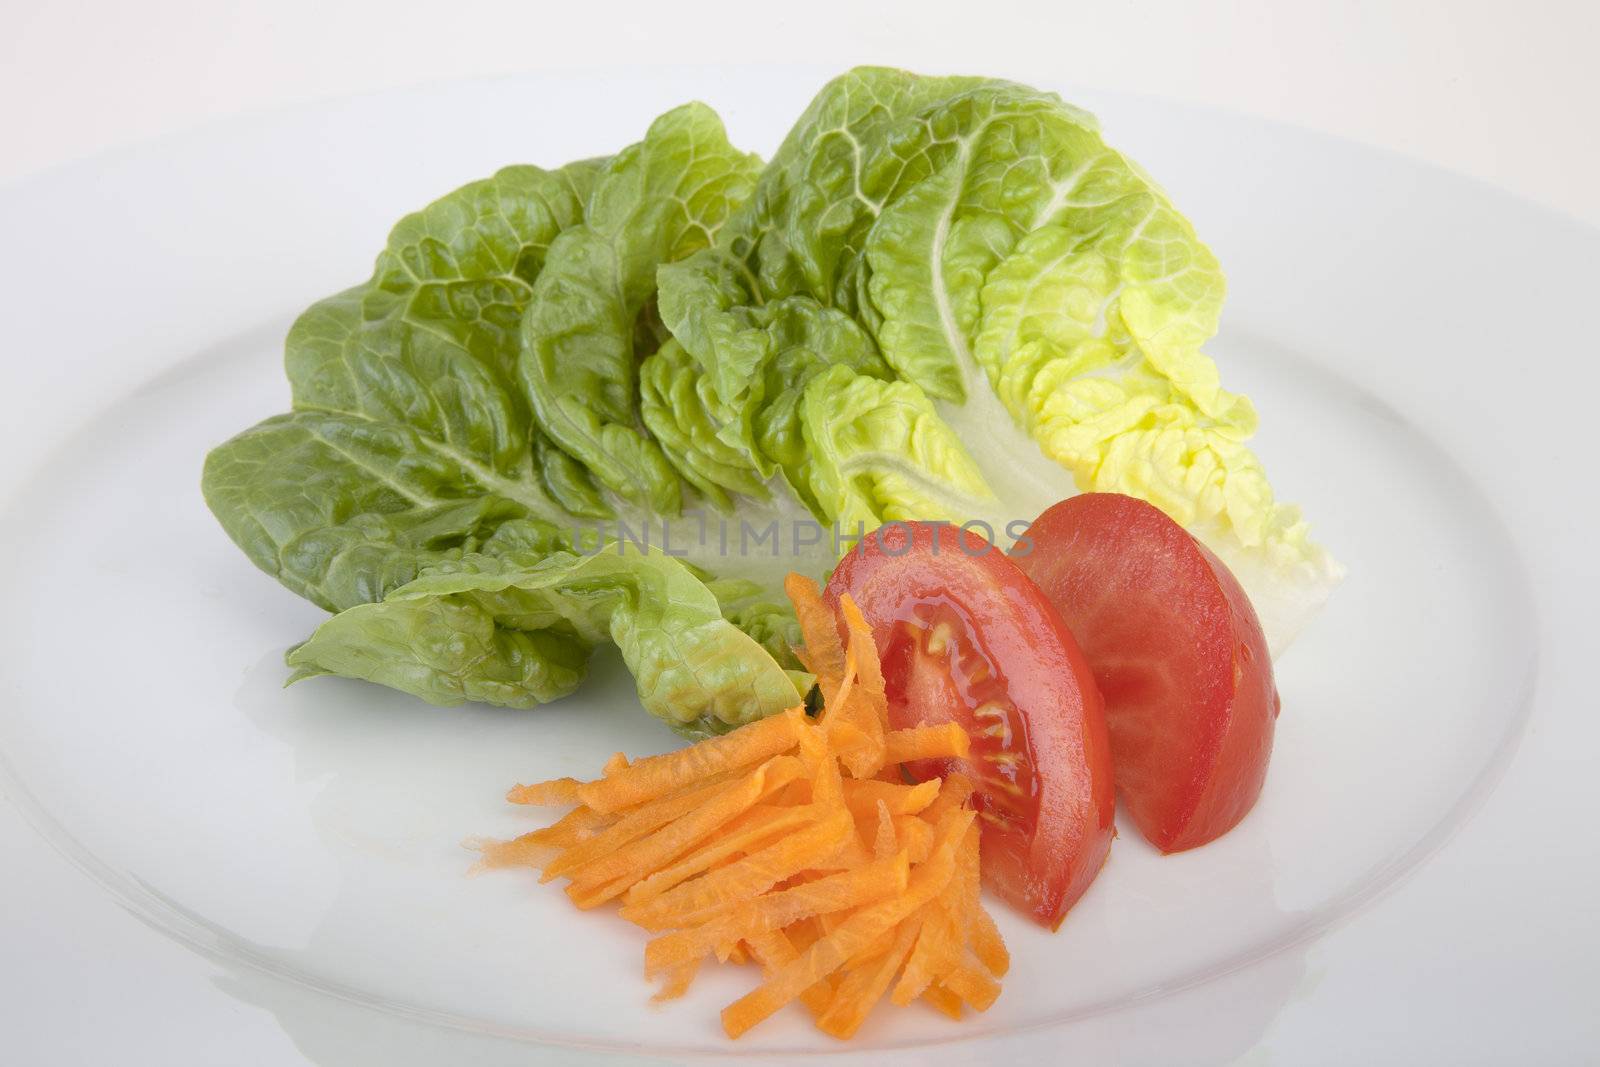 Romaine lettuce, tomato wedges and shredded carrots on white plate.